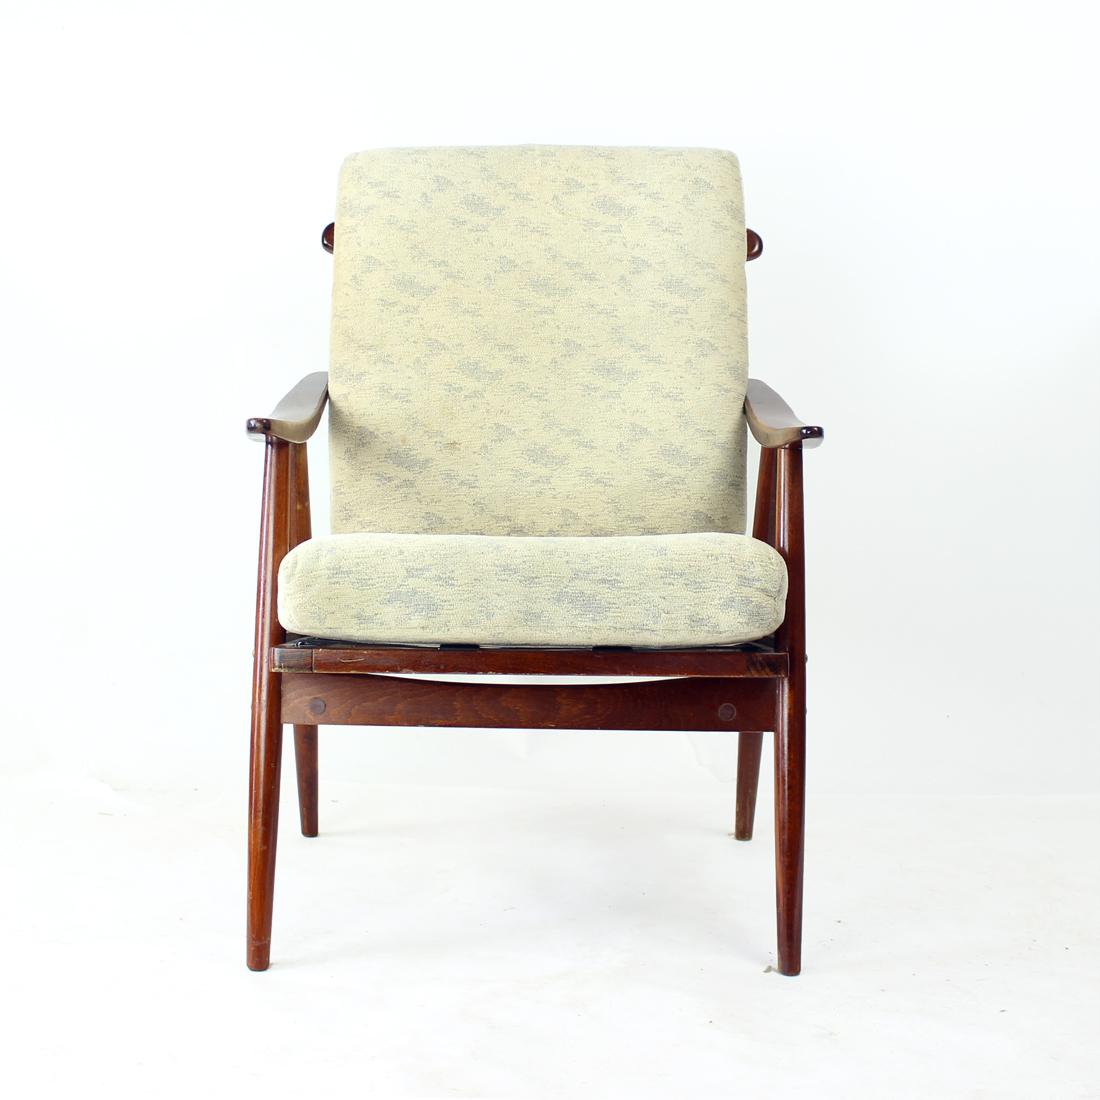 Der ikonische Boomerang-Sessel wurde in den 1960er Jahren von der Firma TON in der Tschechoslowakei hergestellt. Der Name kommt von den geschwungenen Armlehnen. Die Stühle werden als elegantes und luftiges Design mit leichter, aber stabiler